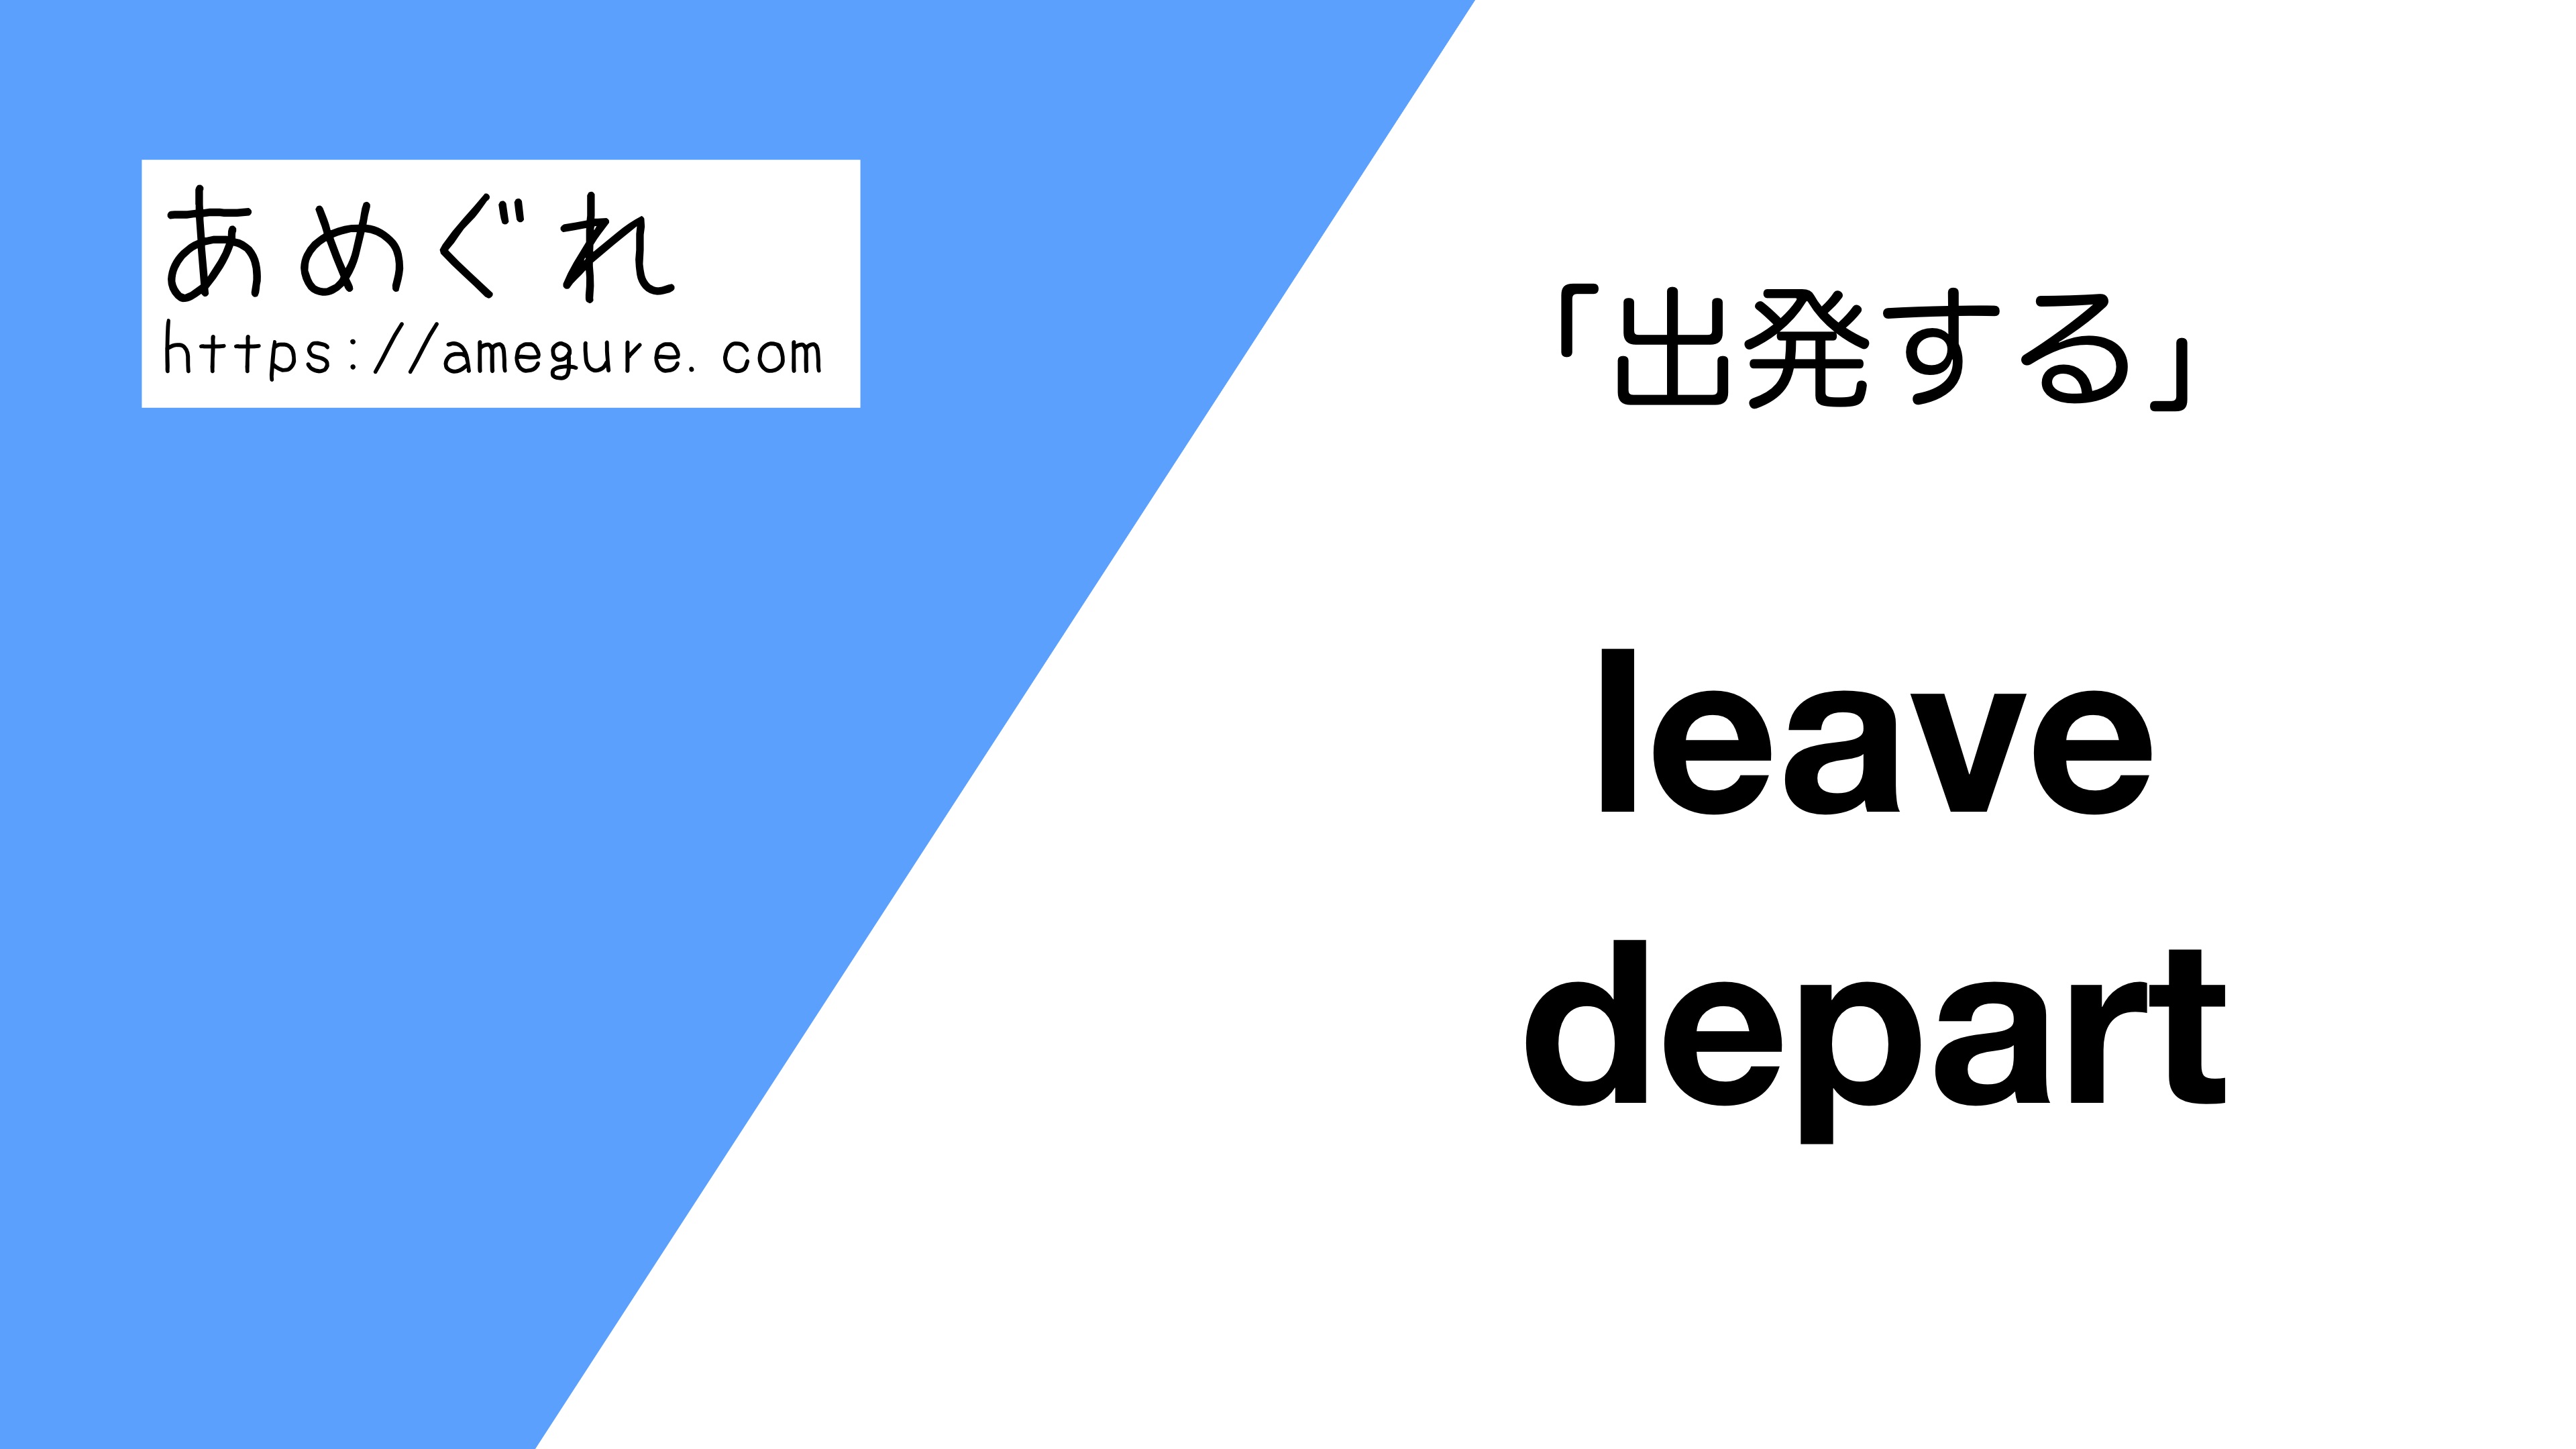 英語 Leave Depart 出発する の意味の違いと使い分け